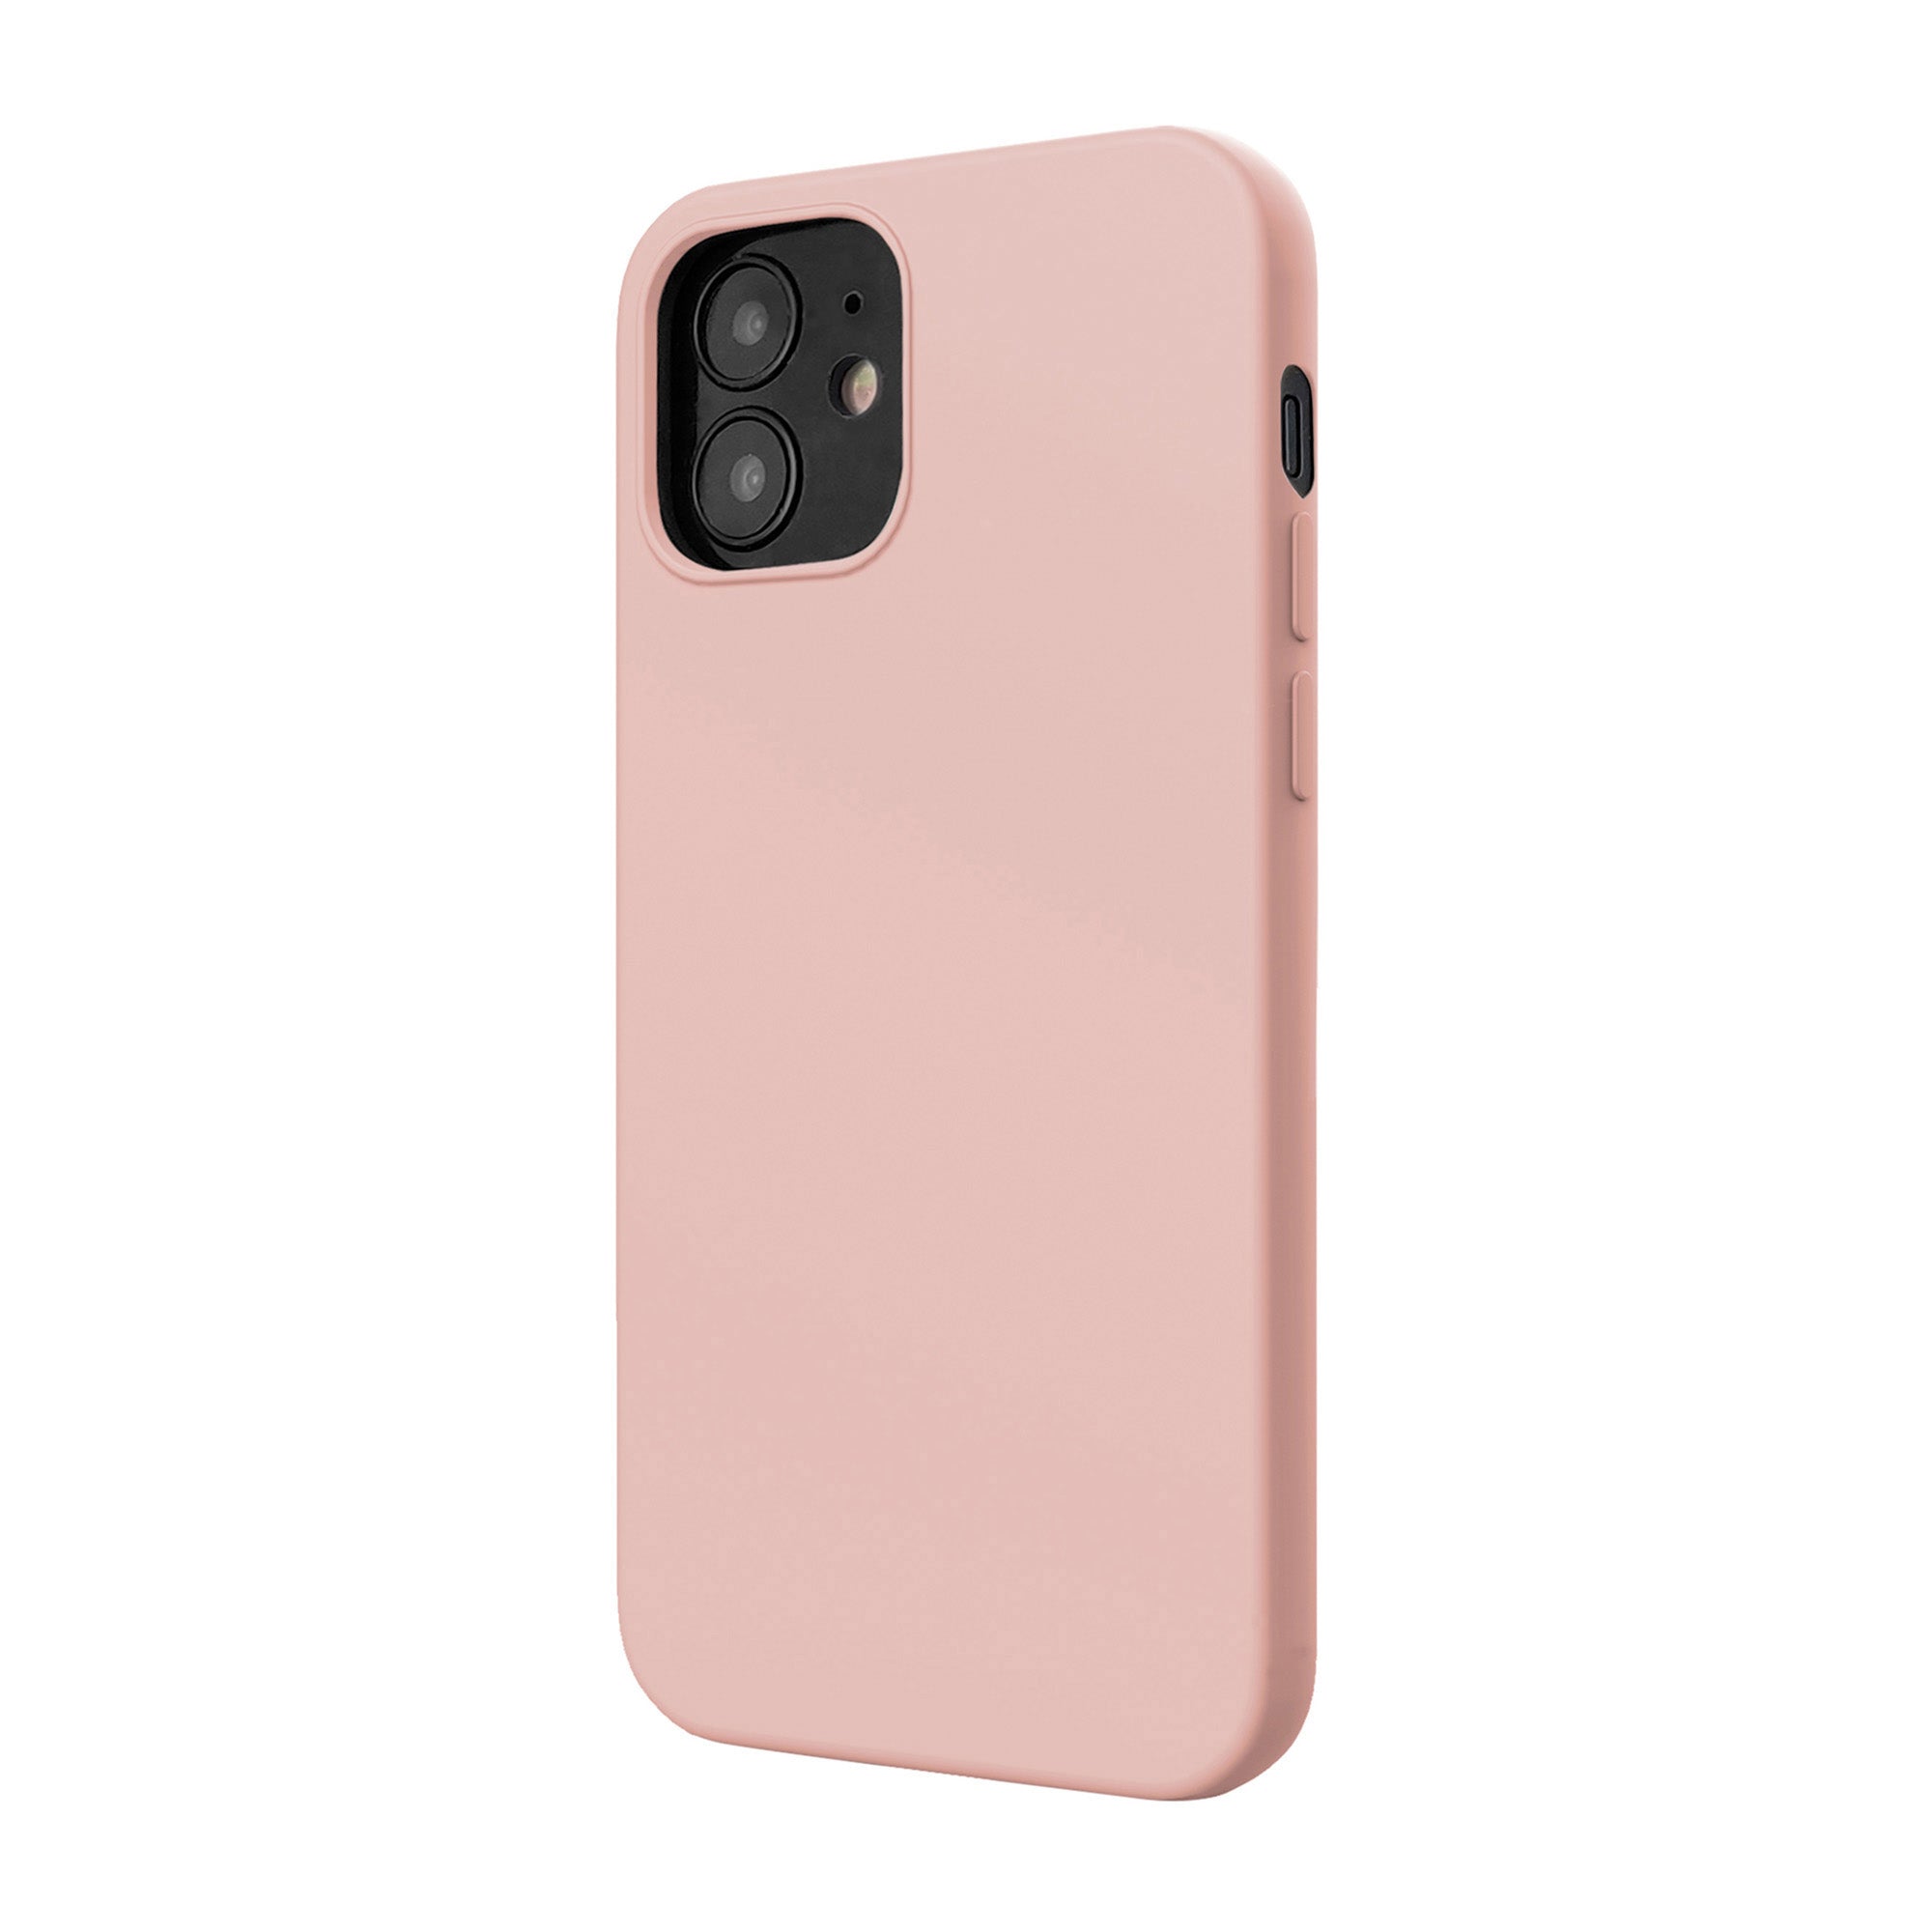 iPhone 12 Mini Uunique Pink Liquid Silicone Case - 15-07597